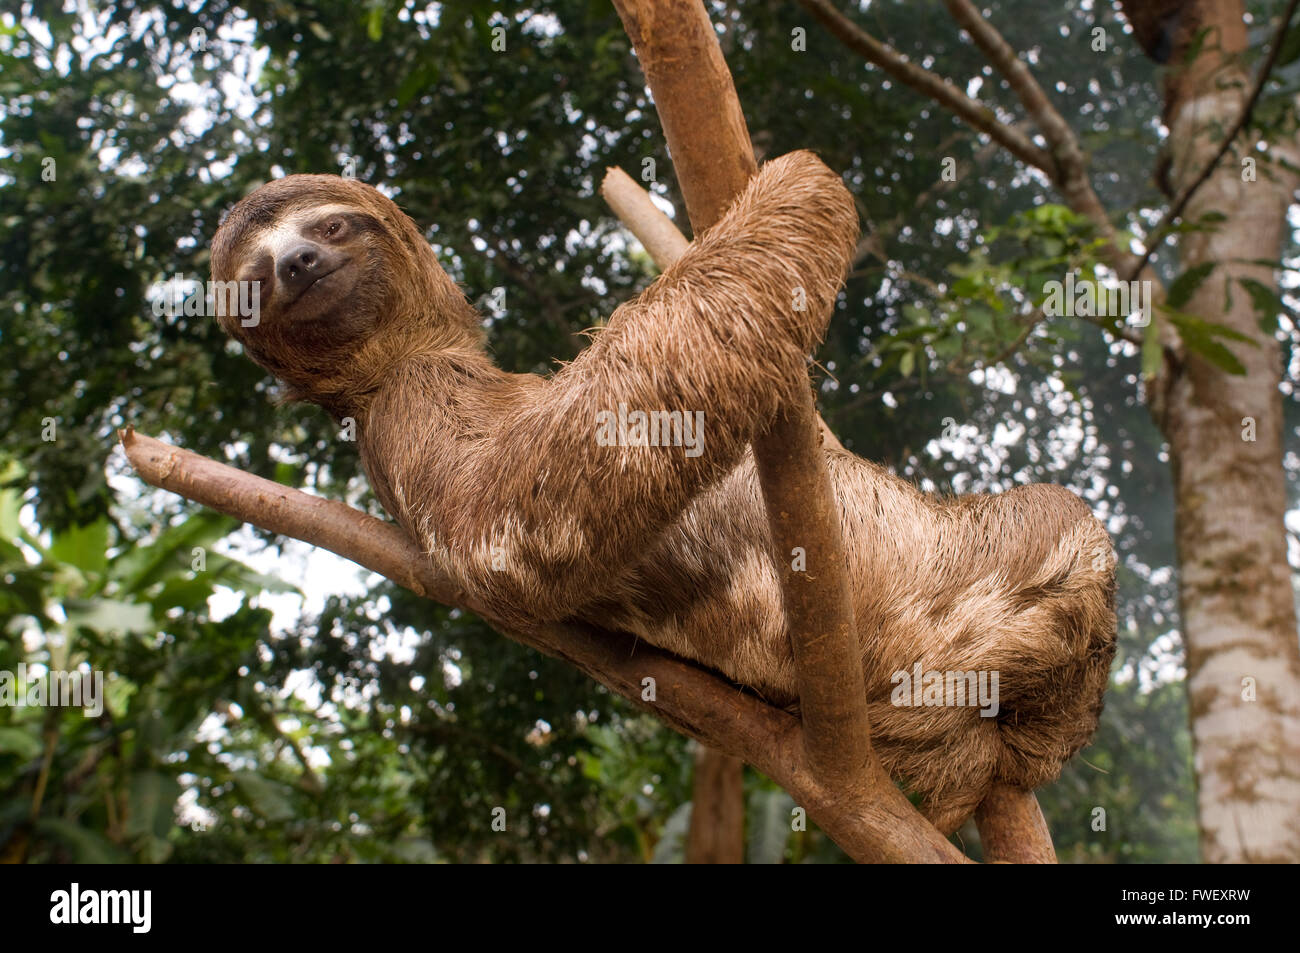 Un ours grimpa à un arbre dans une forêt primaire à la forêt amazonienne, près de Iquitos, Loreto, le Pérou. Des paresseux sont moyennes m Banque D'Images